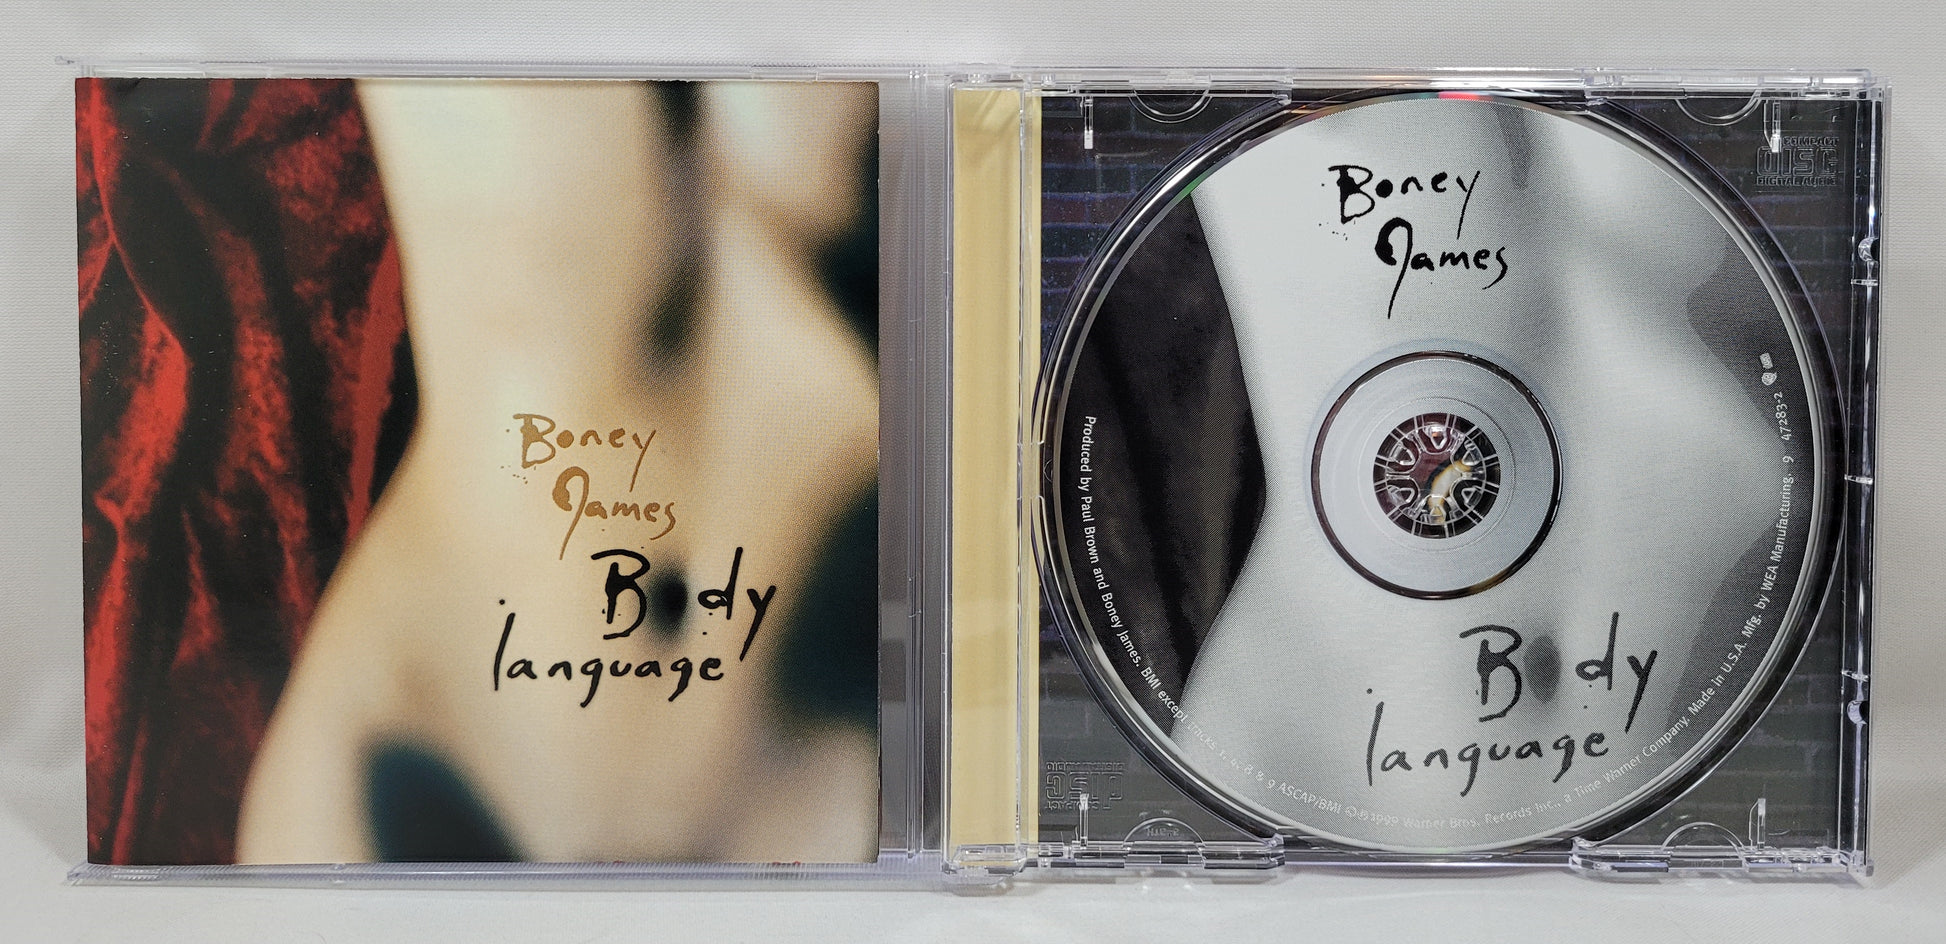 Boney James - Body Language [1999 Used CD]